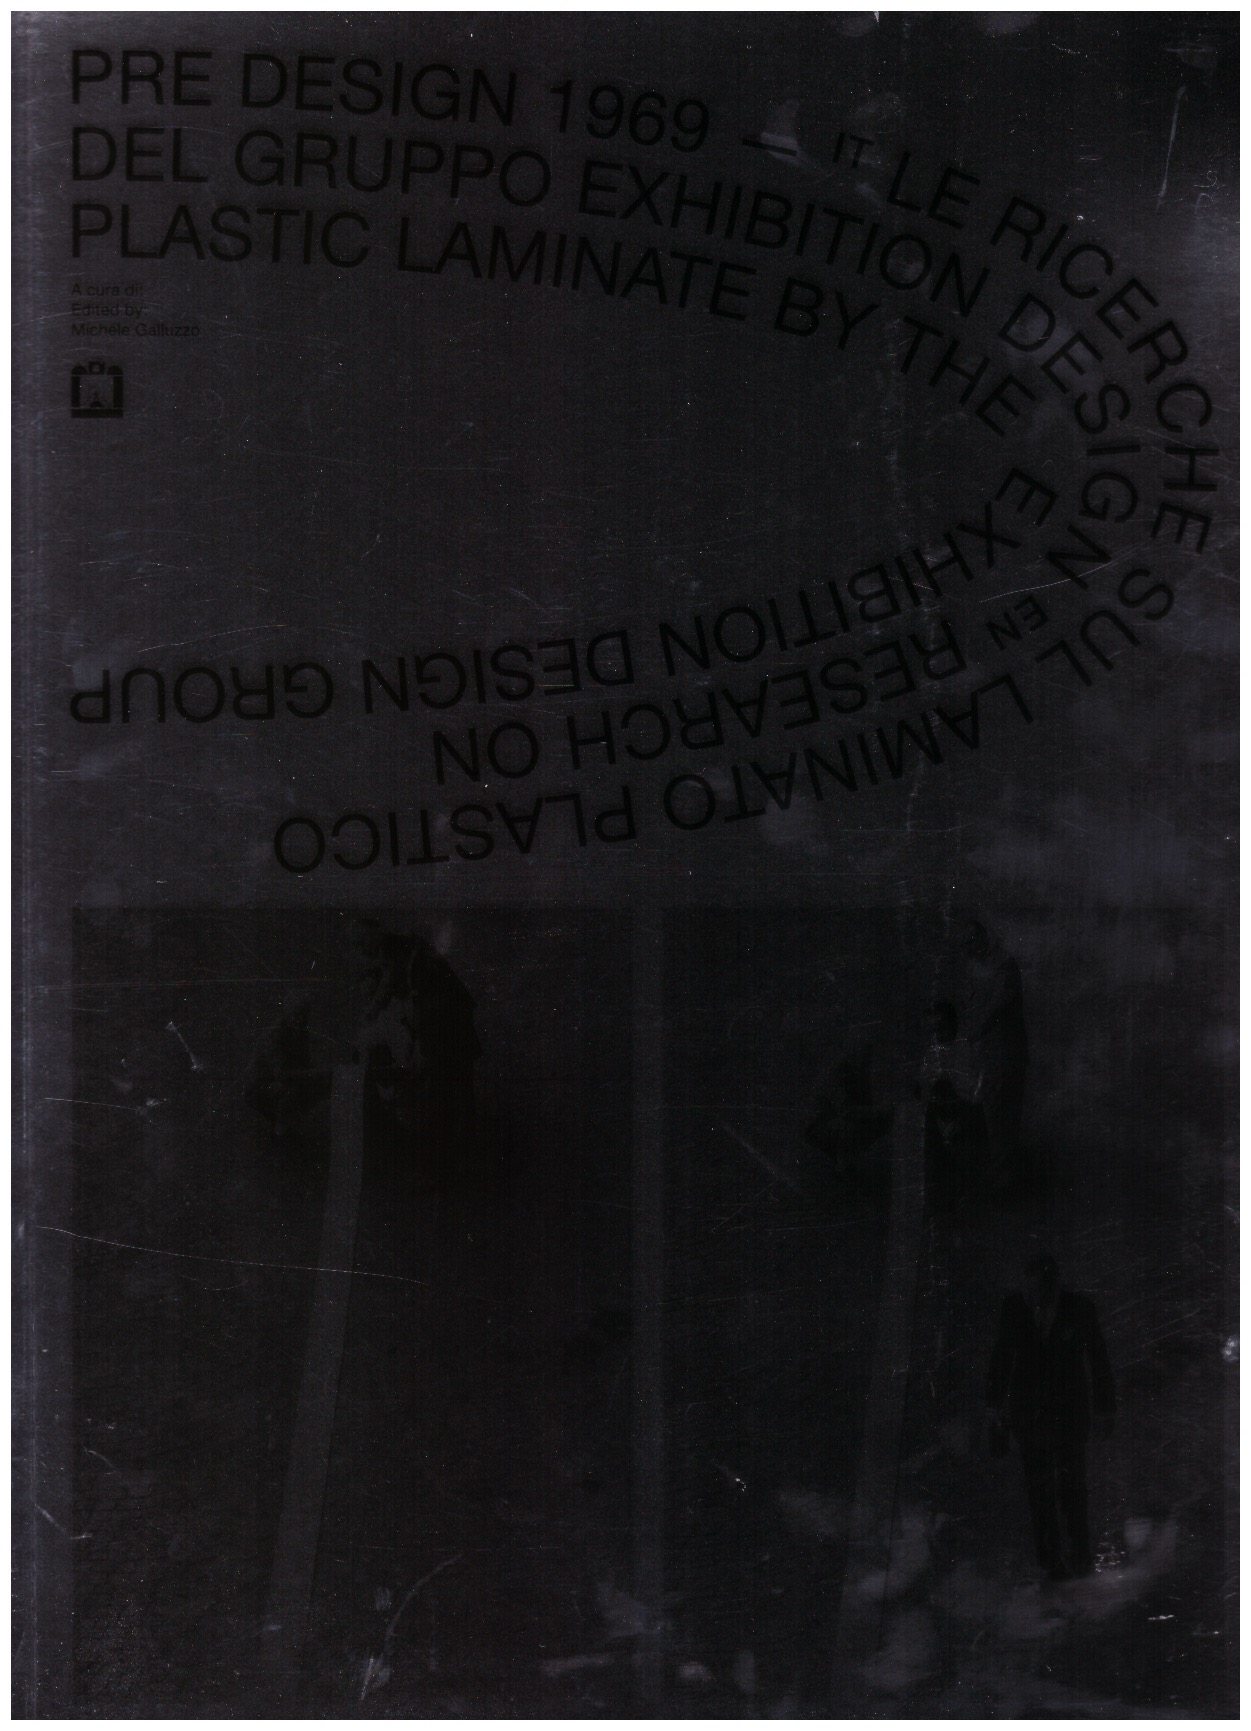 GALLUZZO, Michele - PRE DESIGN 1969. Research on Plastic Laminate by the Exhibition Design group.